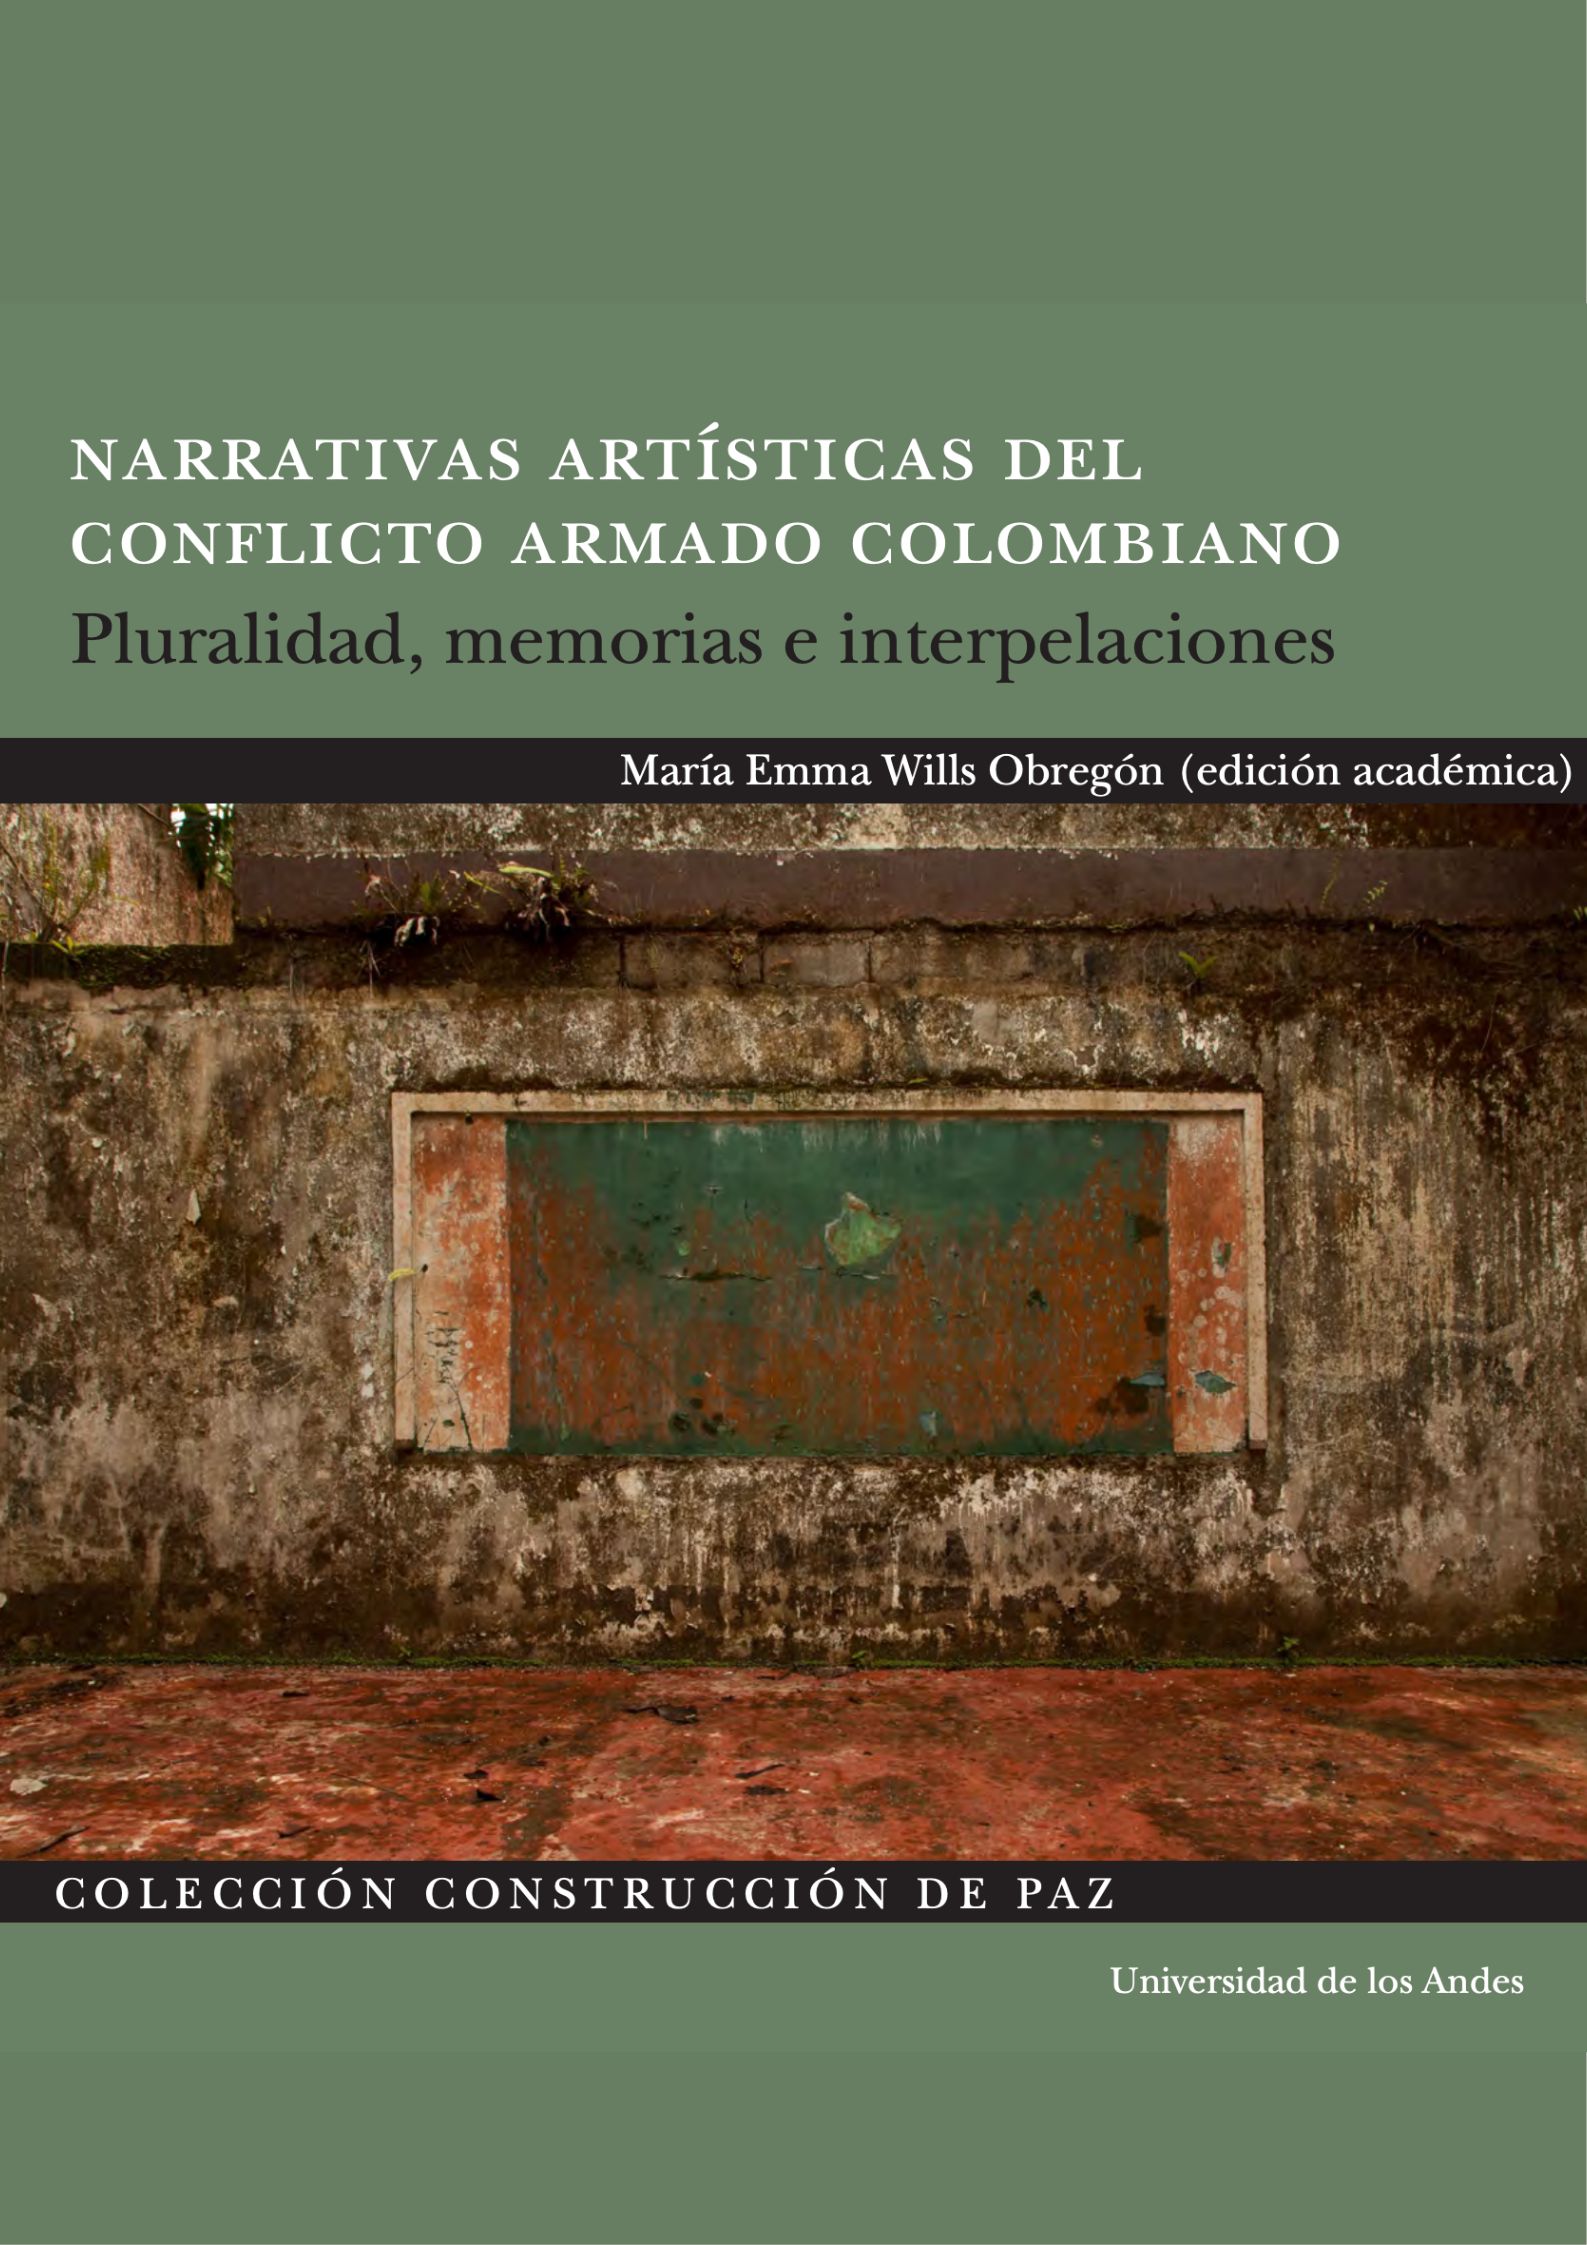 Narrativas artísticas del conflicto armado colombiano. Pluralidad, memorias e interpelaciones